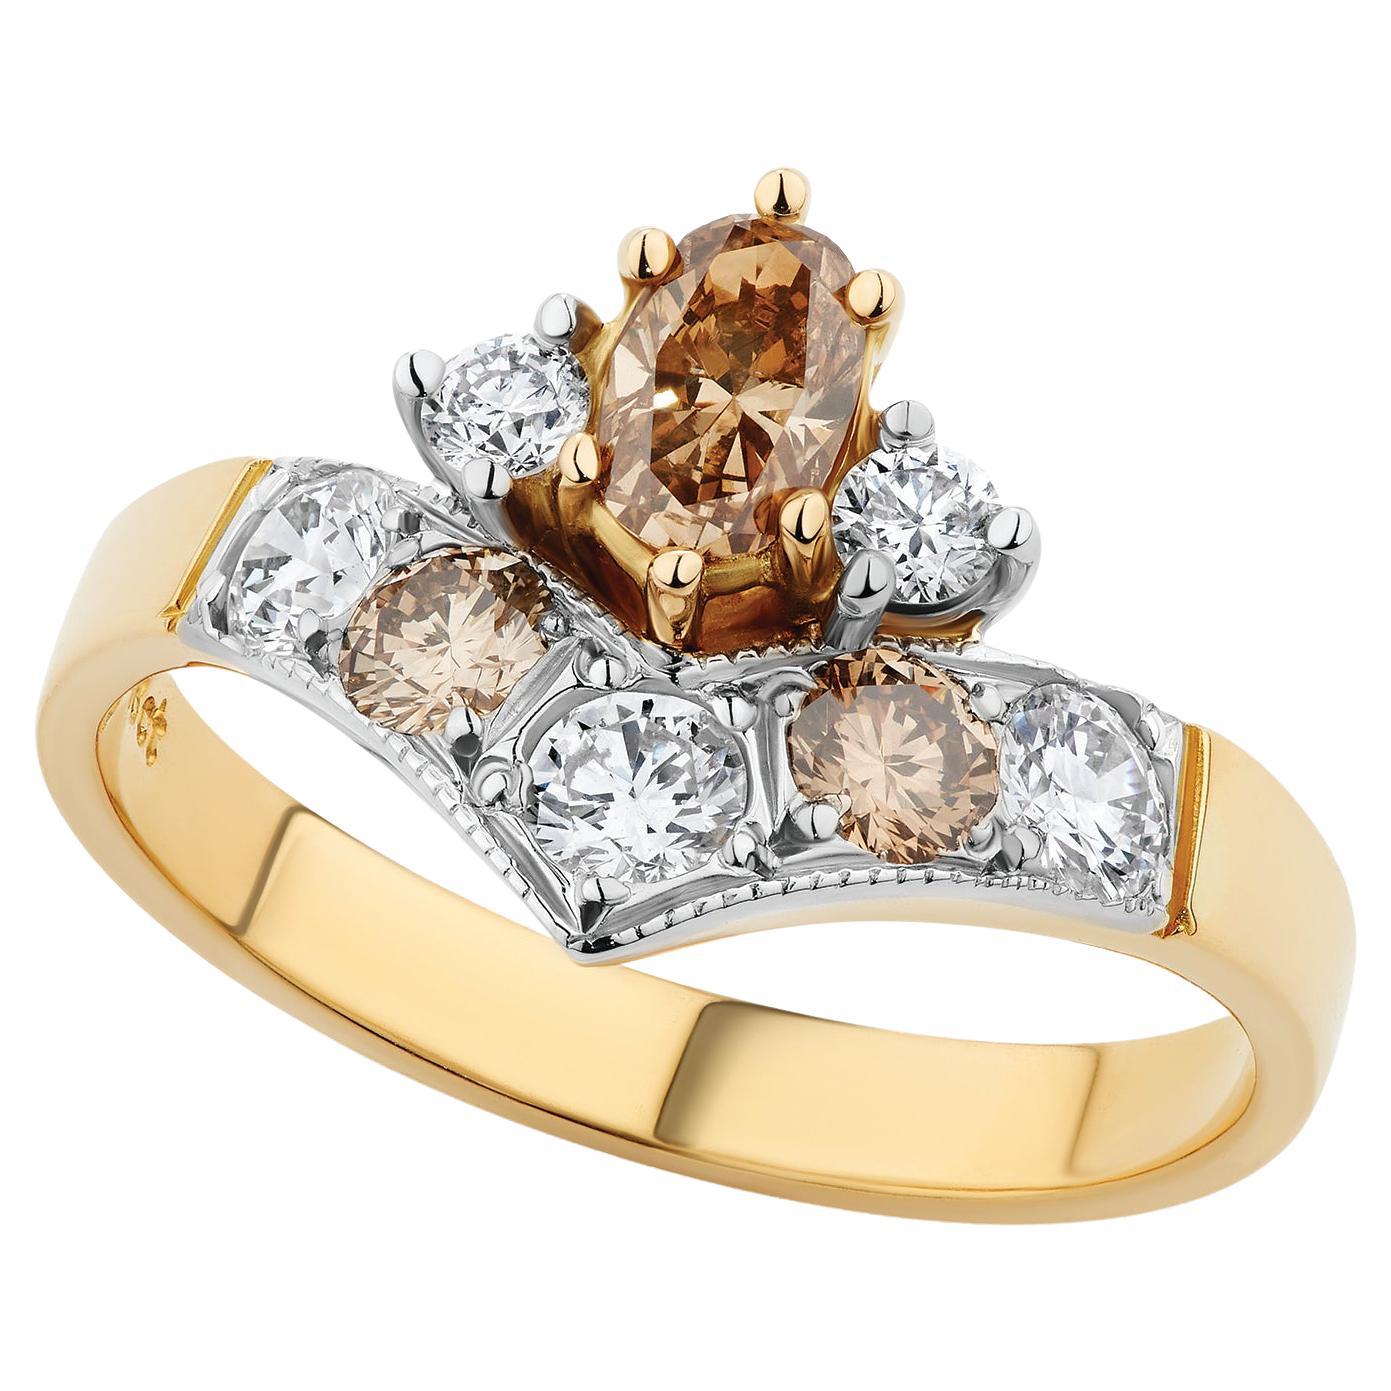 Paul Amey Bague géométrique en or 18 carats et diamants de type Argyle, fabriquée à la main